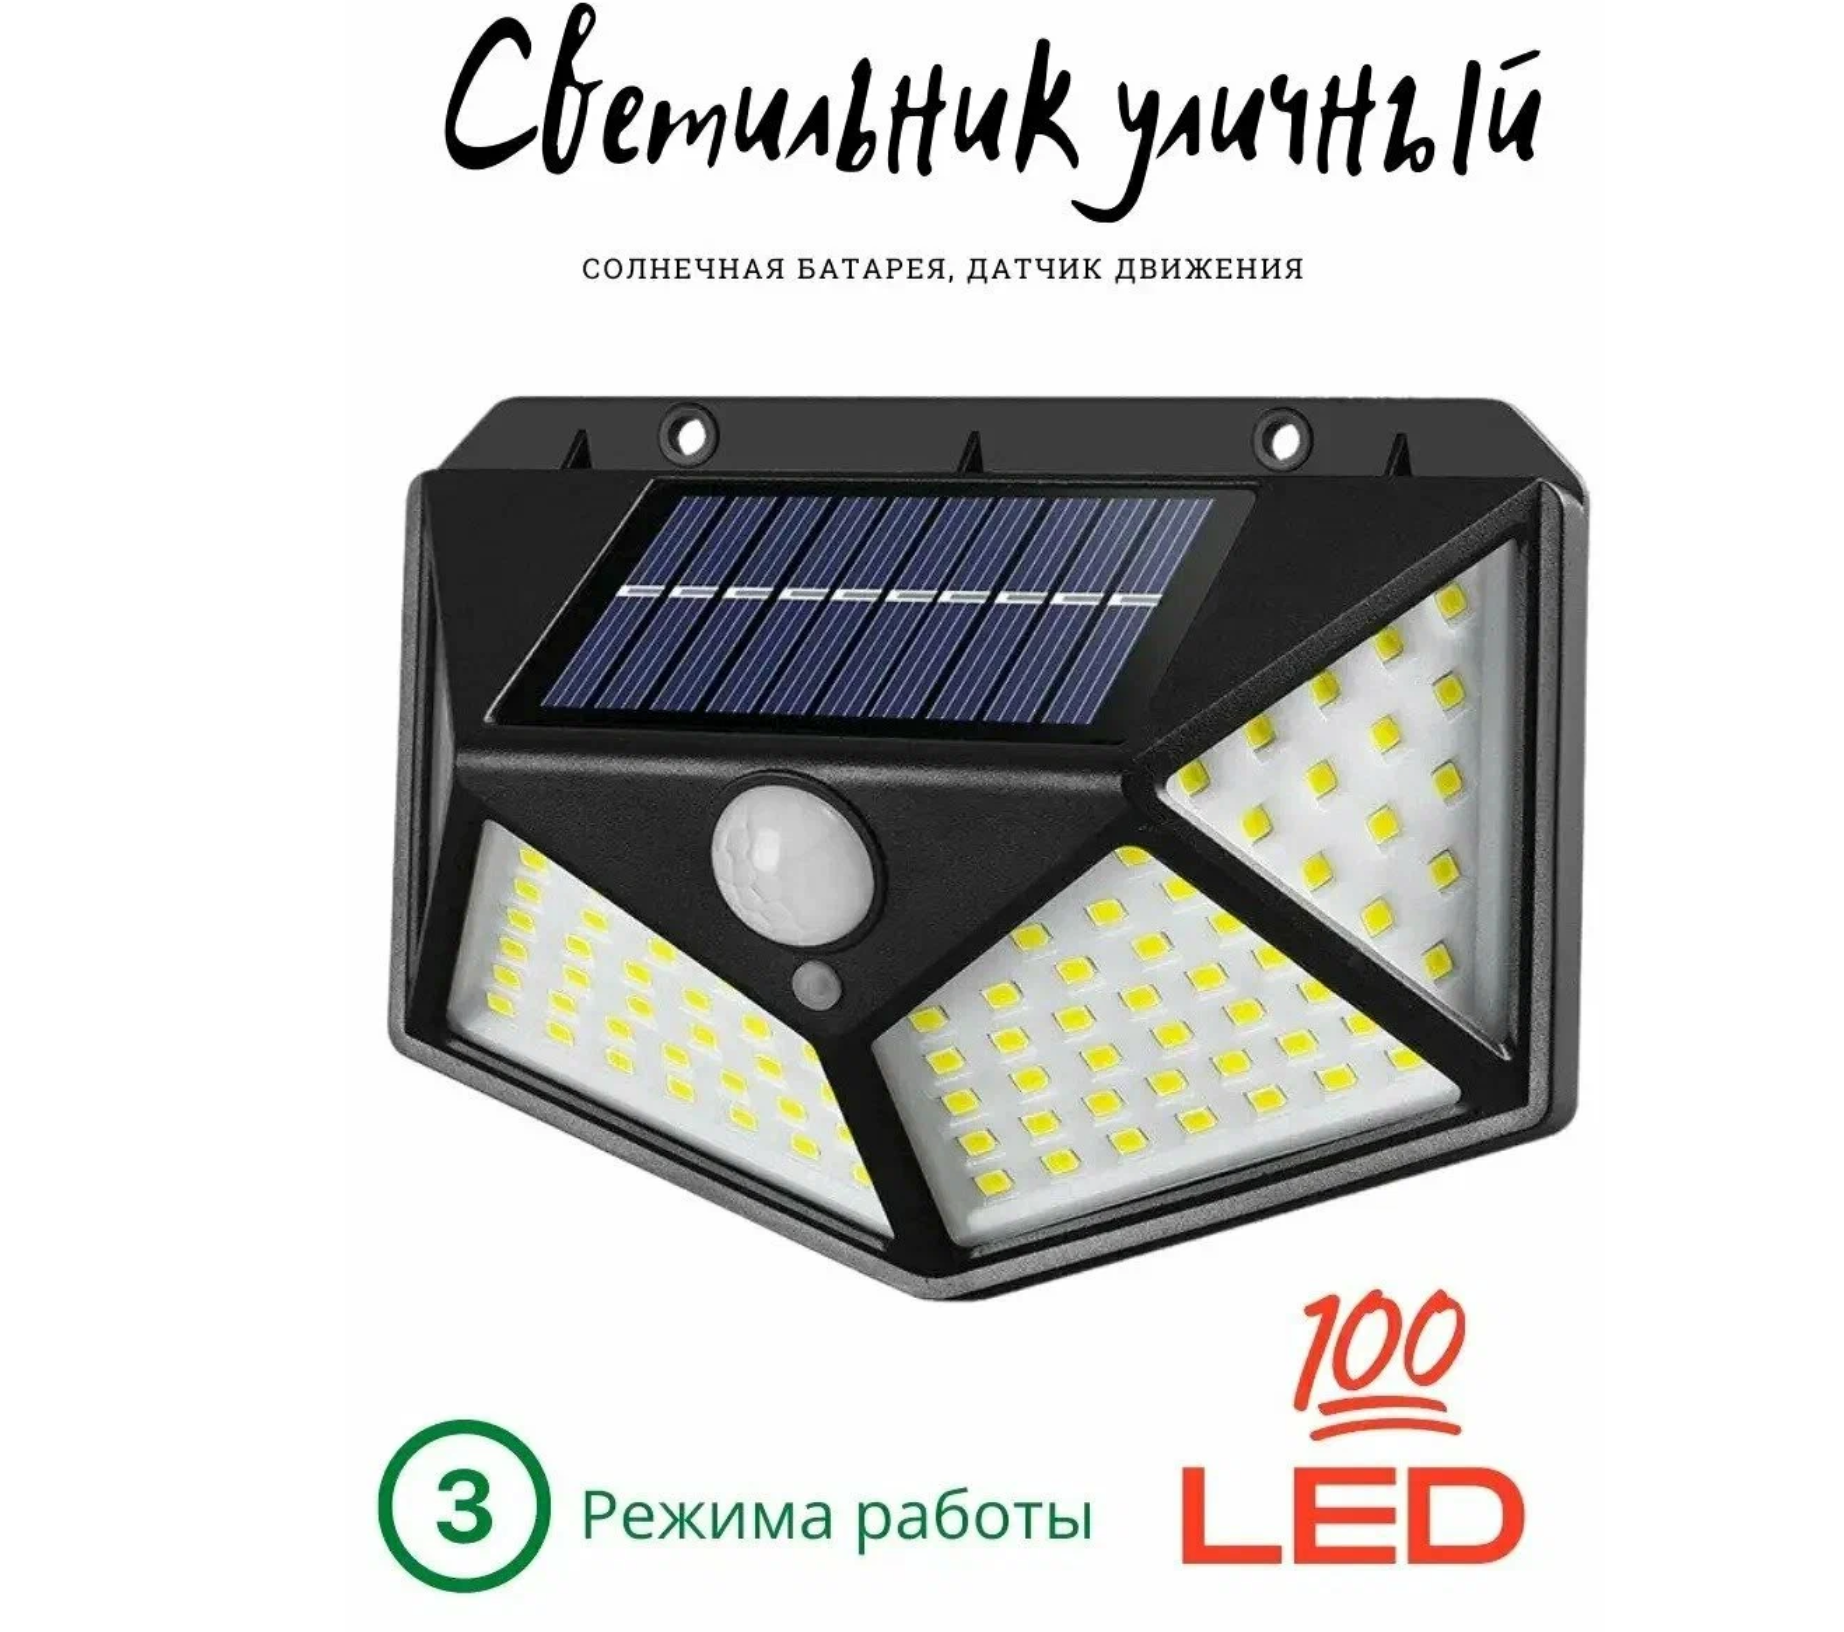 Уличный светодиодный светильник 100 LED 3 режима Фонарь на солнечных батареях с датчиком движения беспроводной